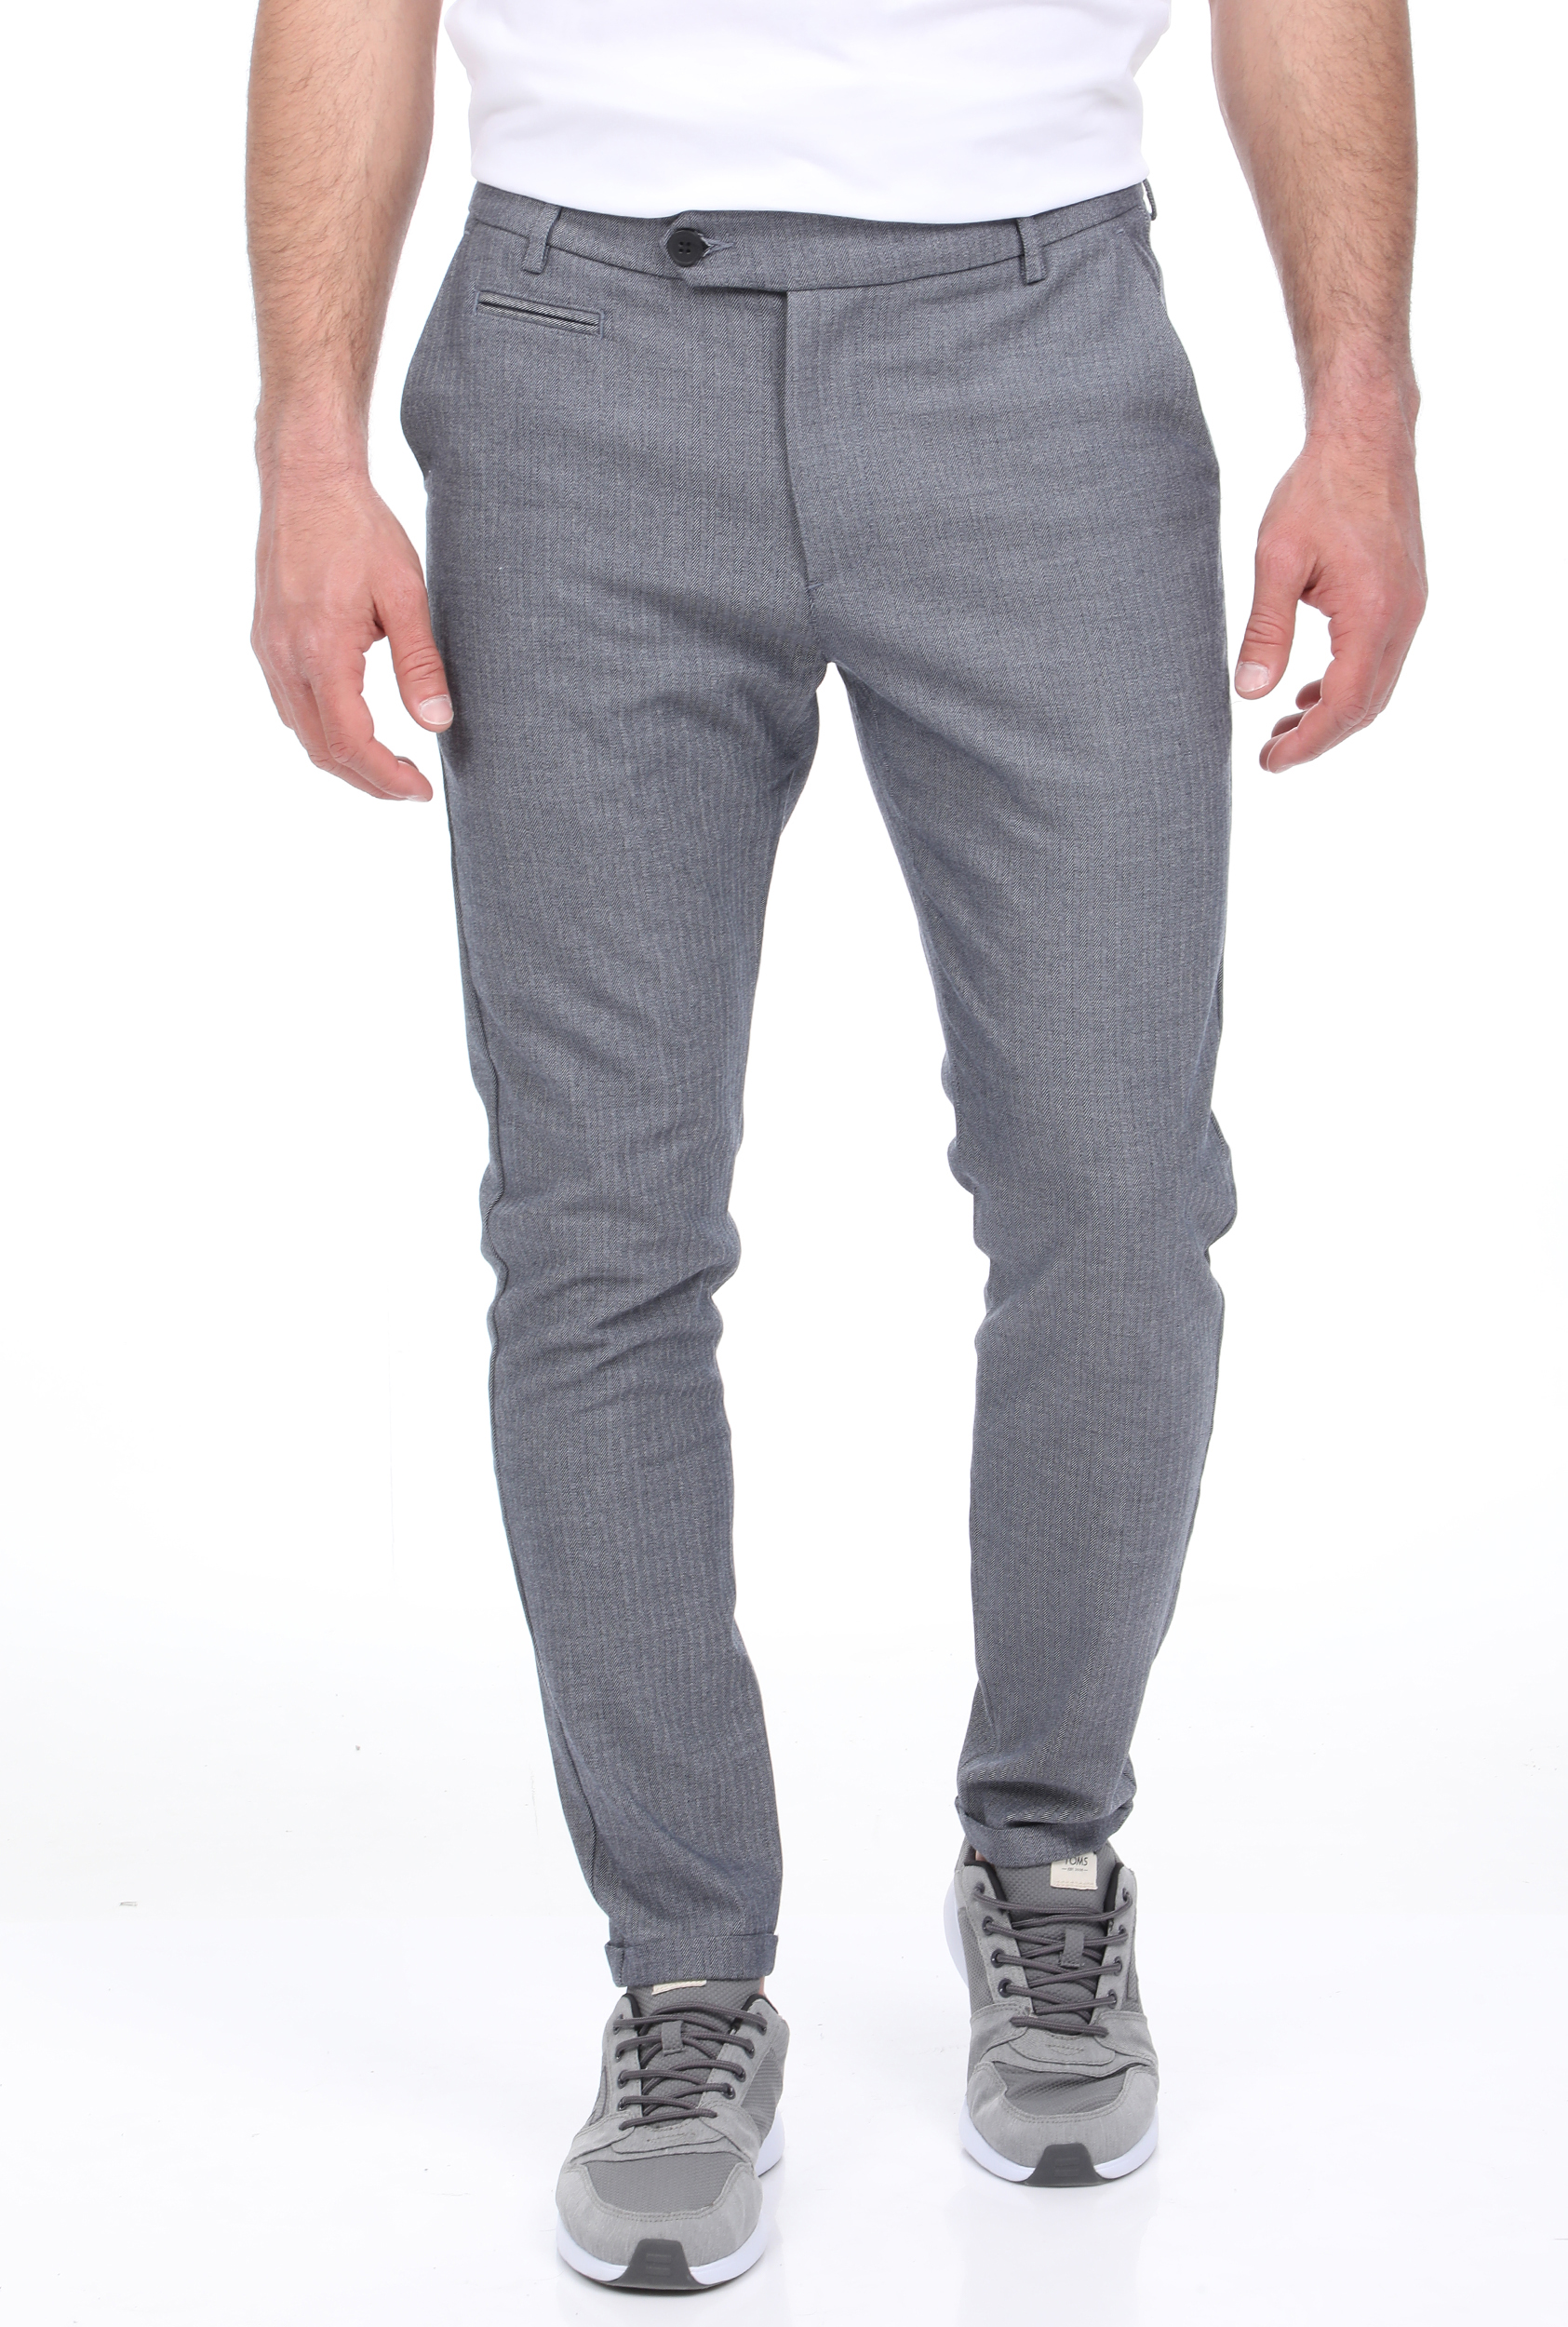 Ανδρικά/Ρούχα/Παντελόνια/Chinos LES DEUX - Ανδρικό παντελόνι LES DEUX Malus Suit Pants μπλε γκρι